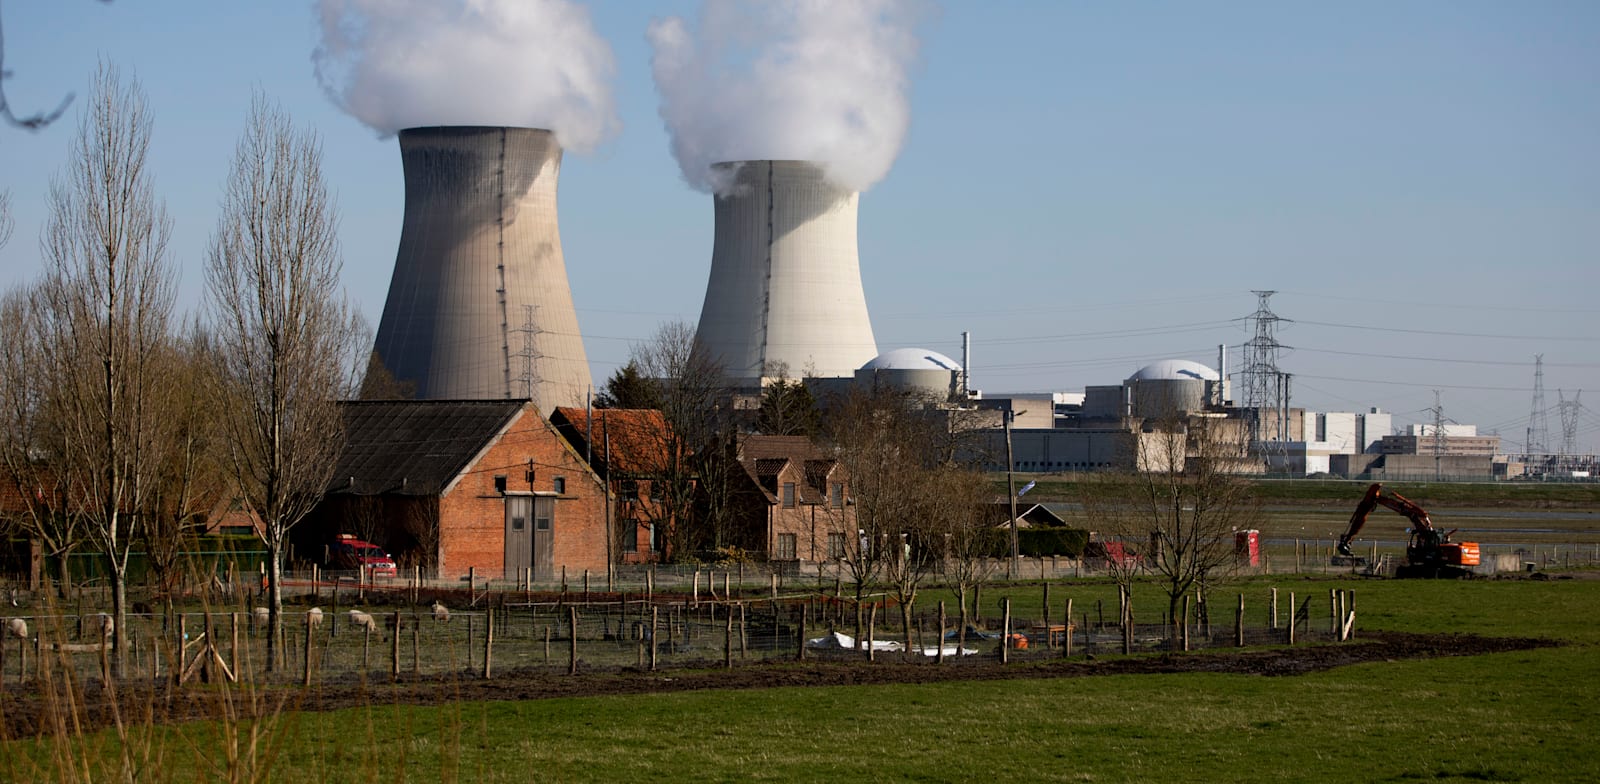 תחנת כוח גרעינית בבלגיה. תכננה לסגור את תחנות הכח הגרעיניות עד 2025 עד שפרצה המלחמה / צילום: Associated Press, Virginia Mayo